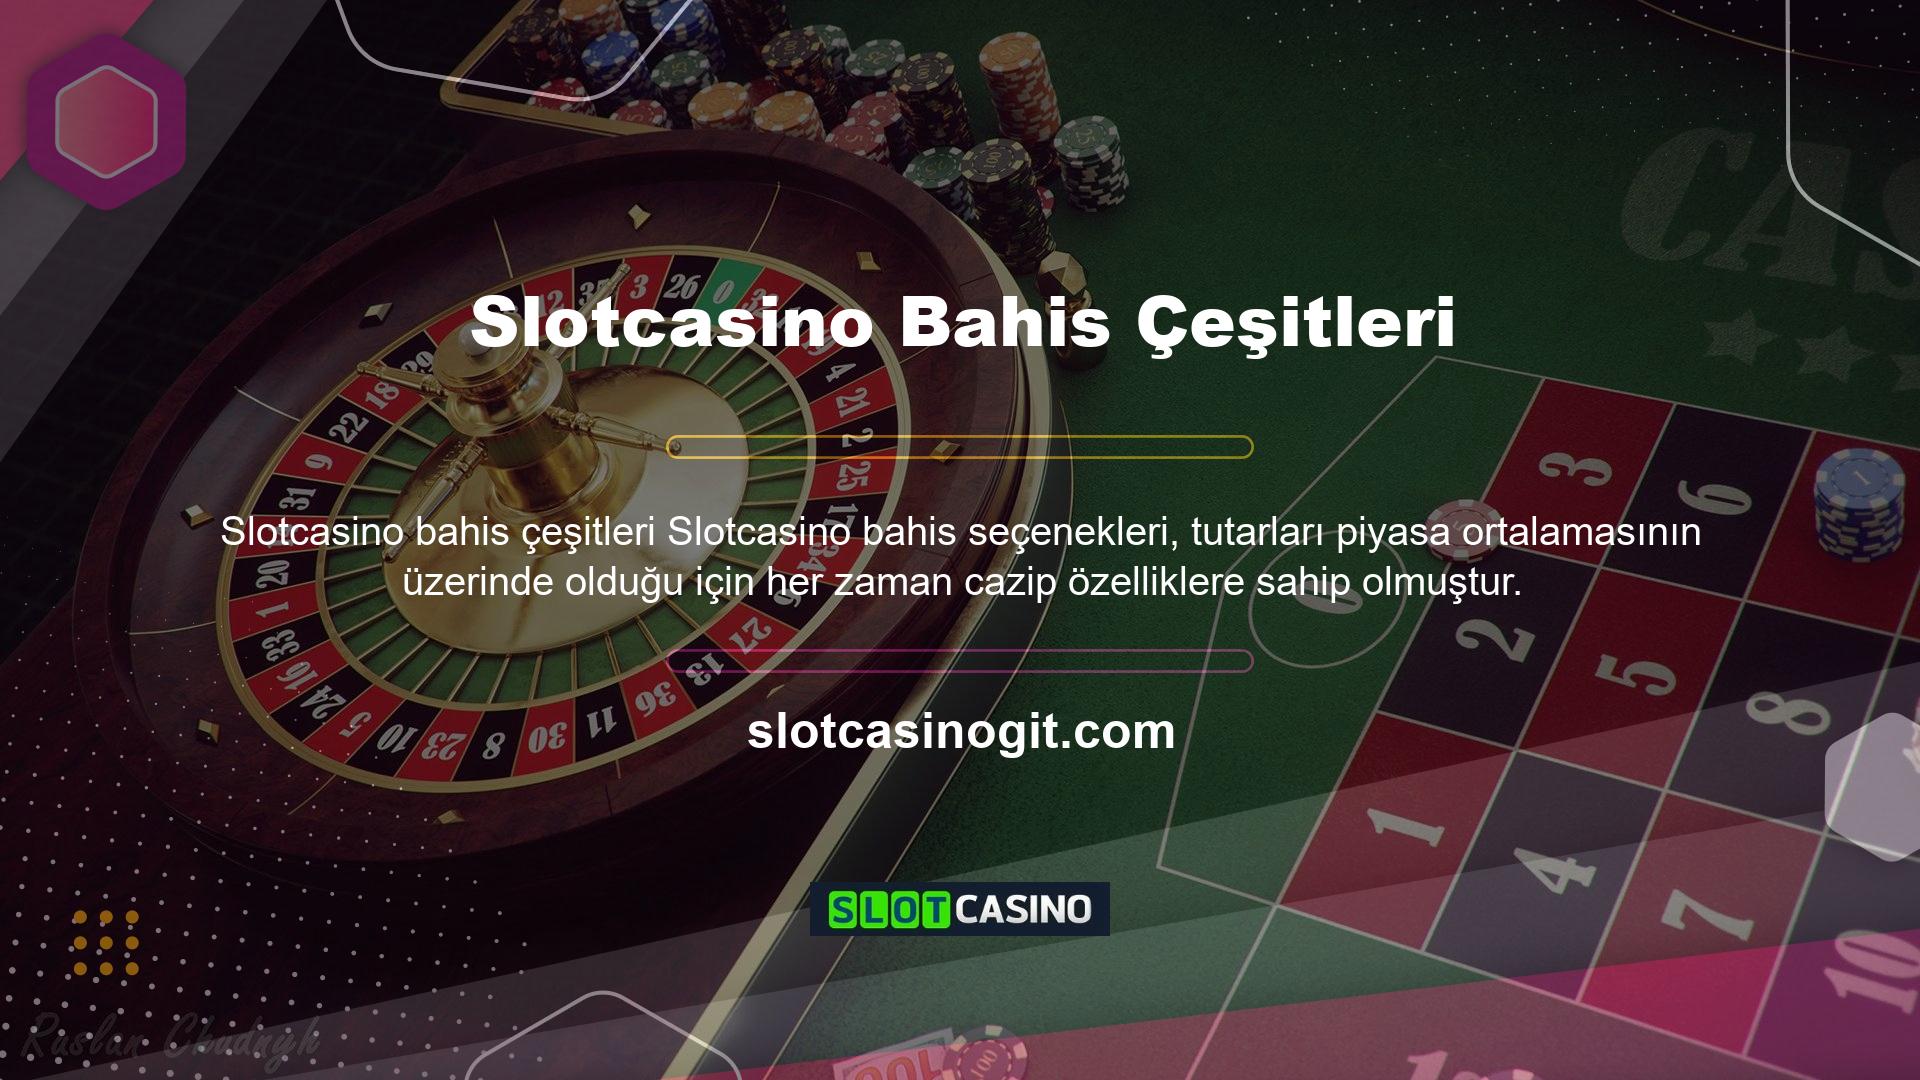 Slotcasino, tüm popüler spor dallarında sınırsız bahis kombinasyonları sunar